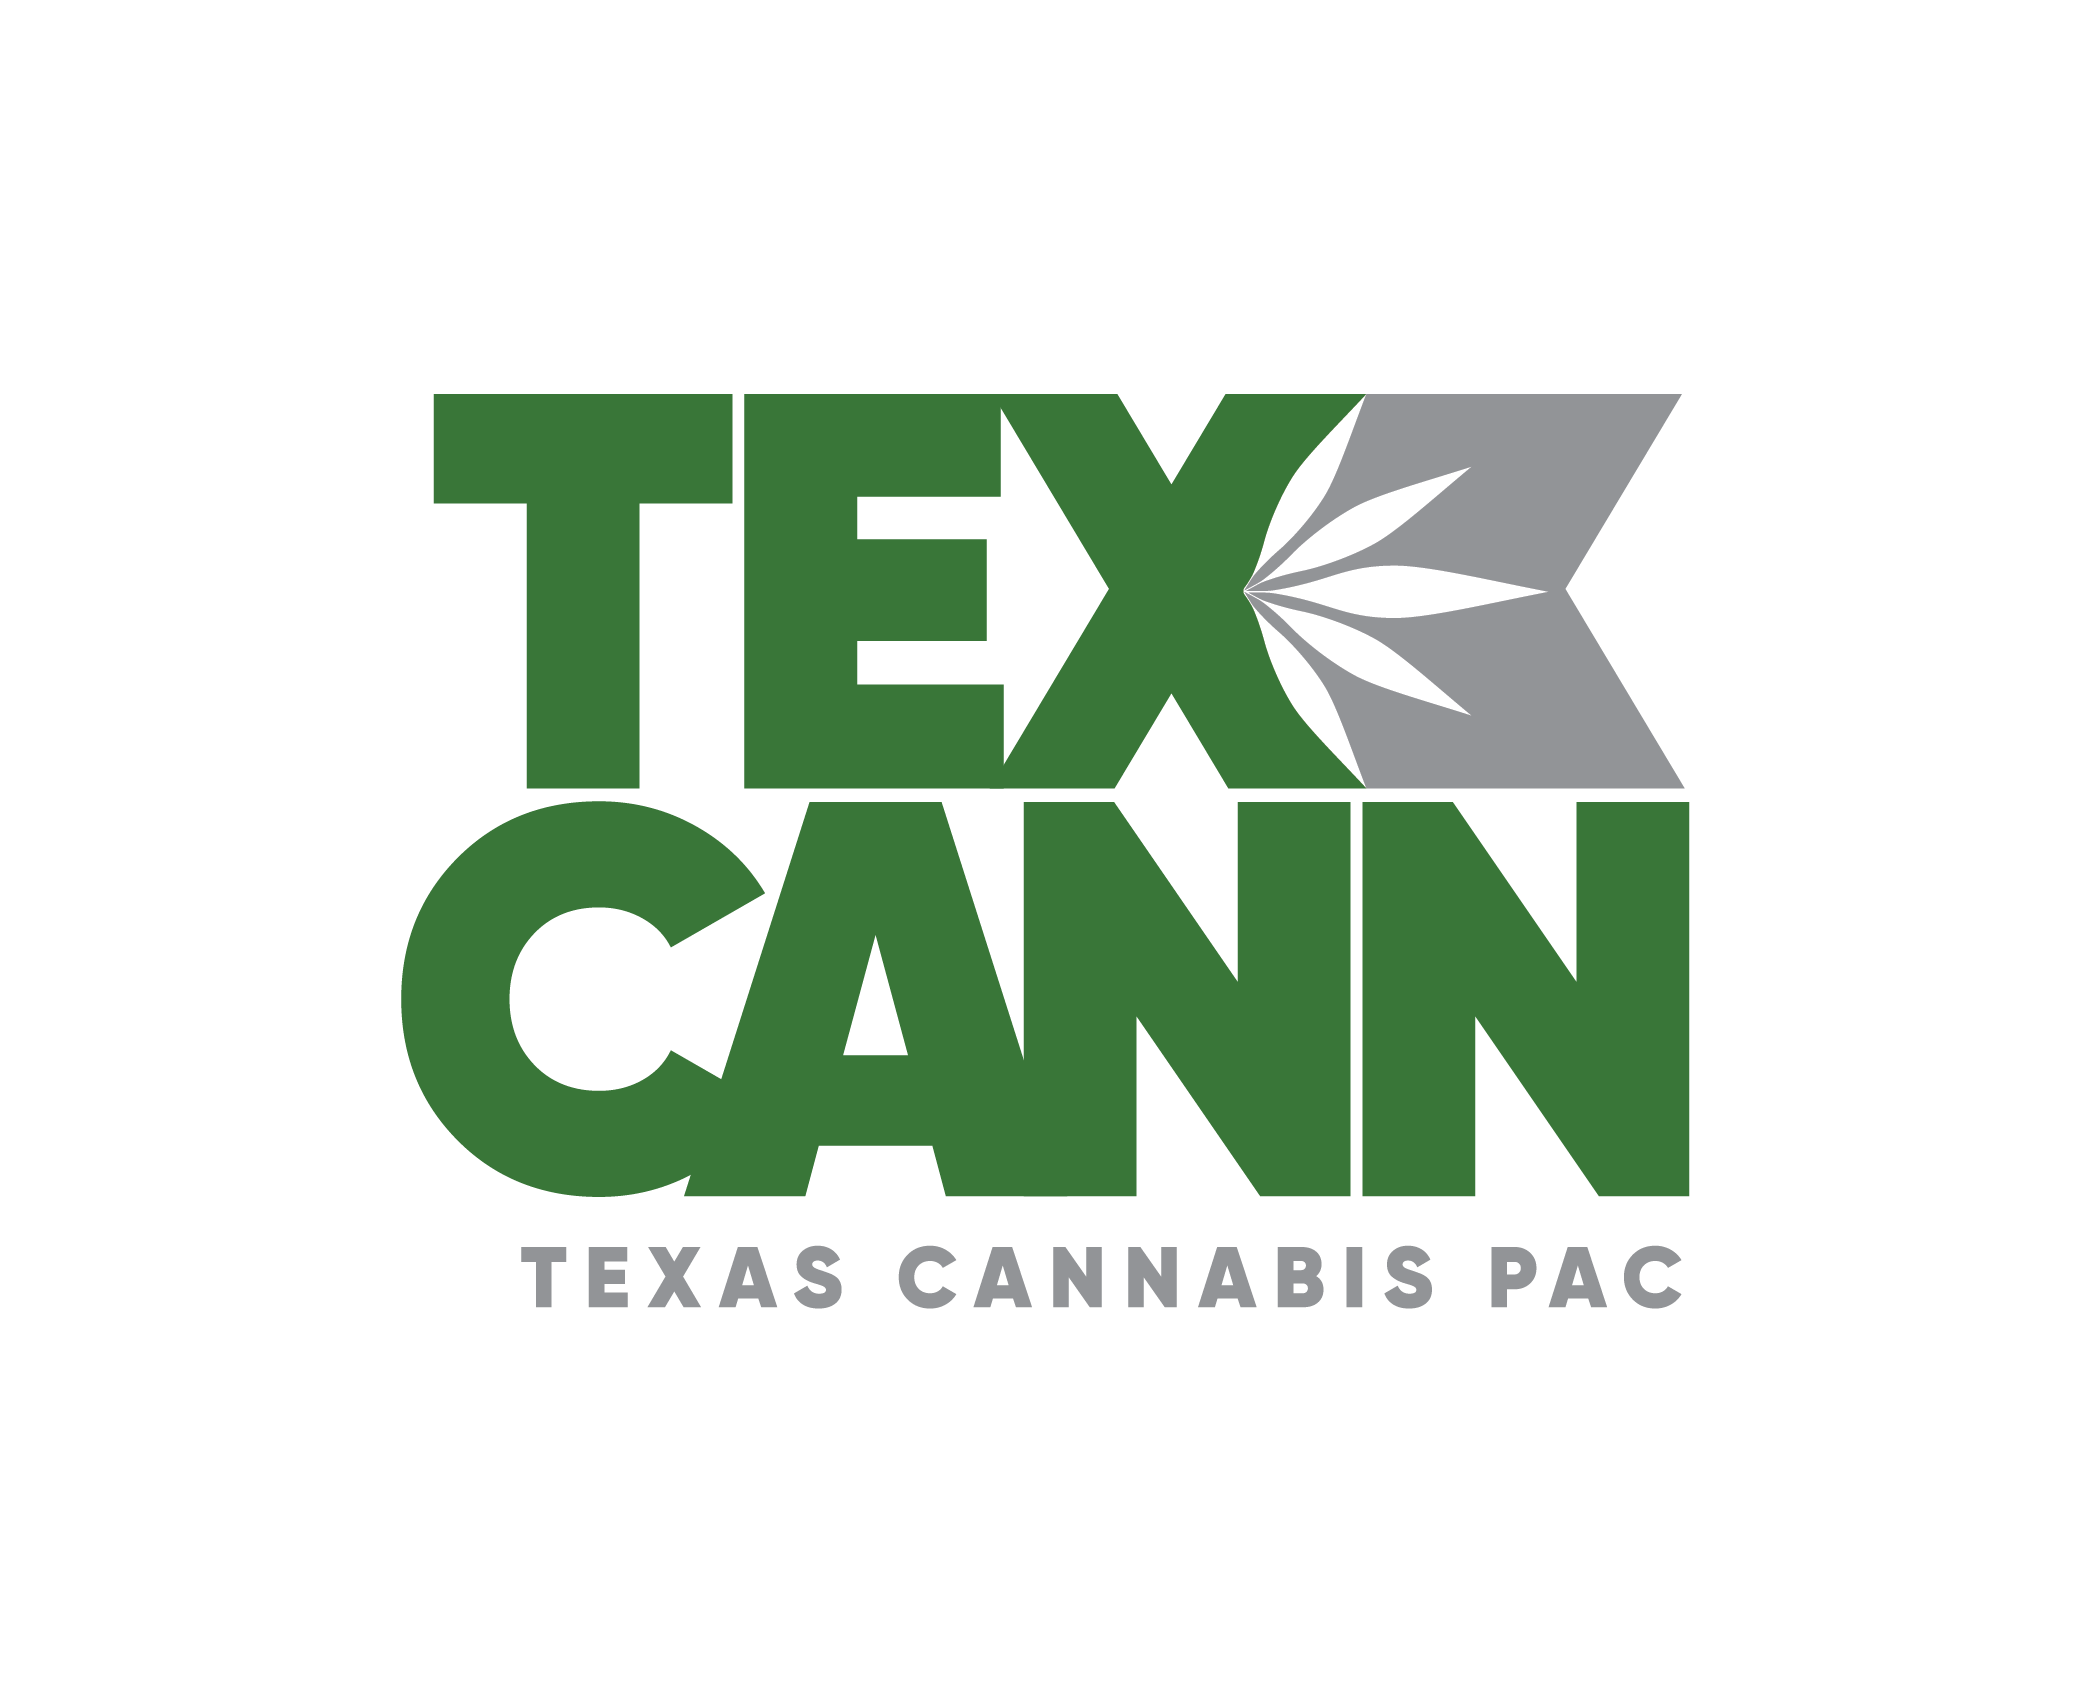 Texas Cannabis PAC